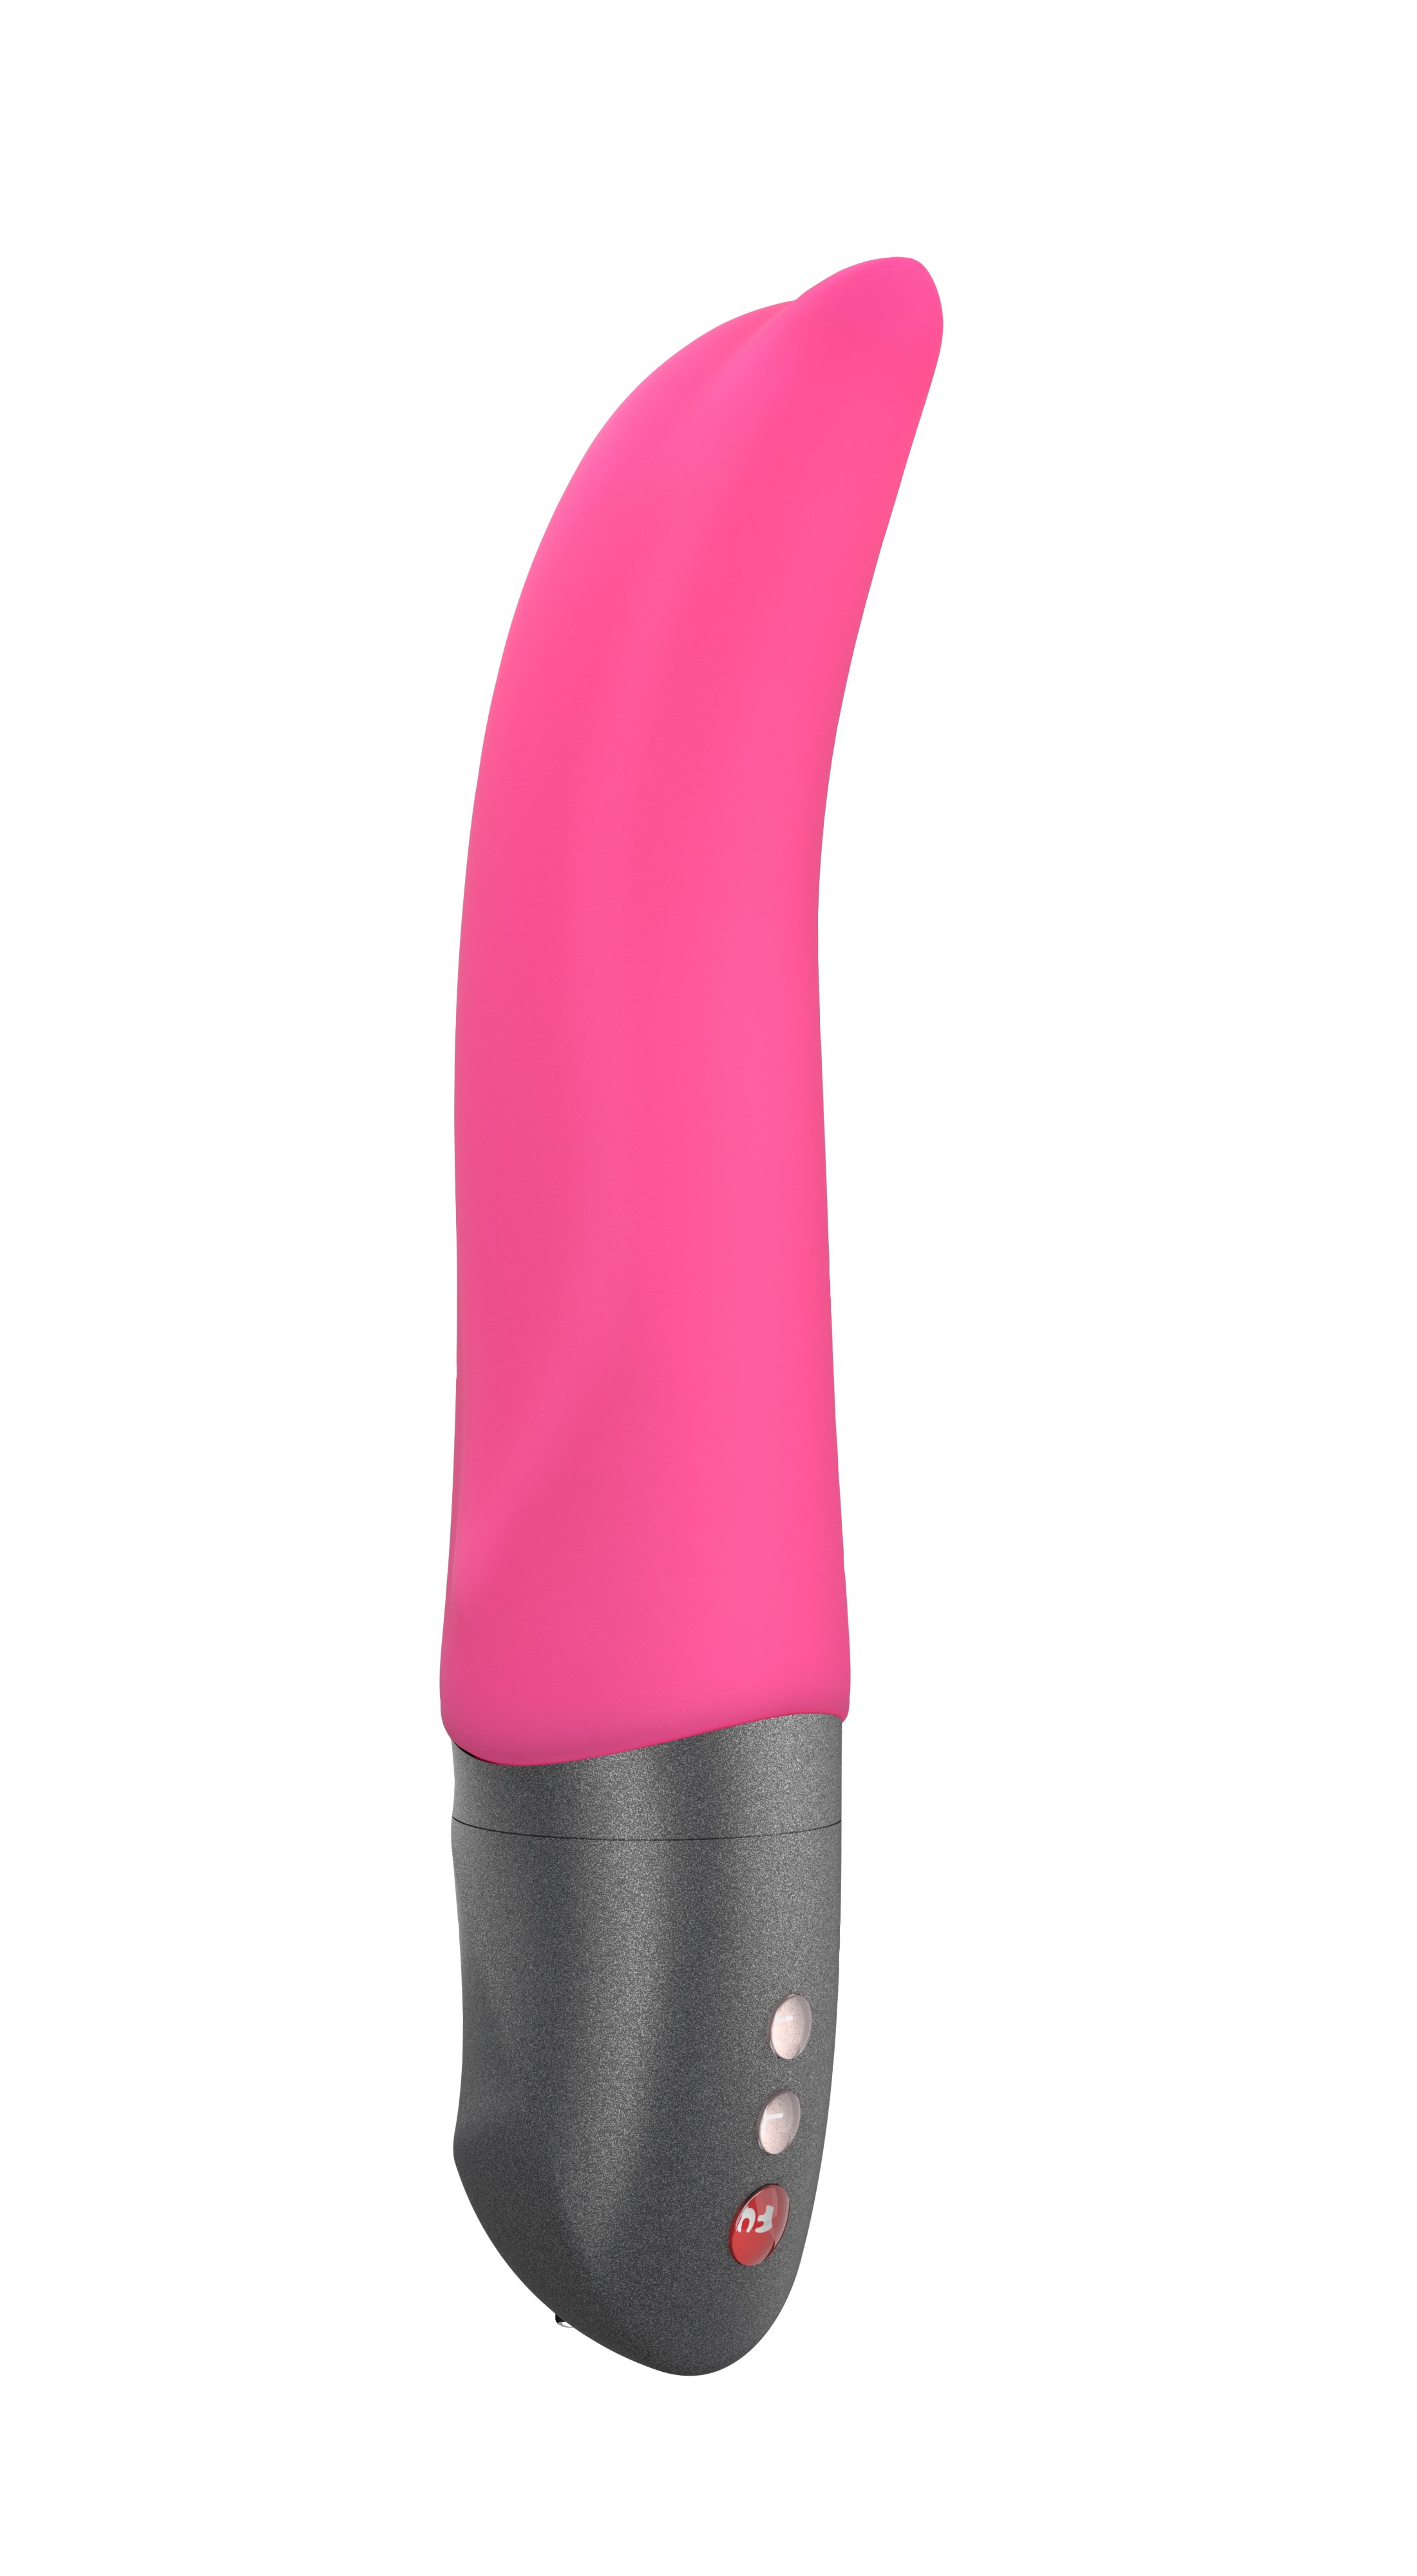 Розовый вибратор Diva Dolphin Battery + выполненный в форме дельфина